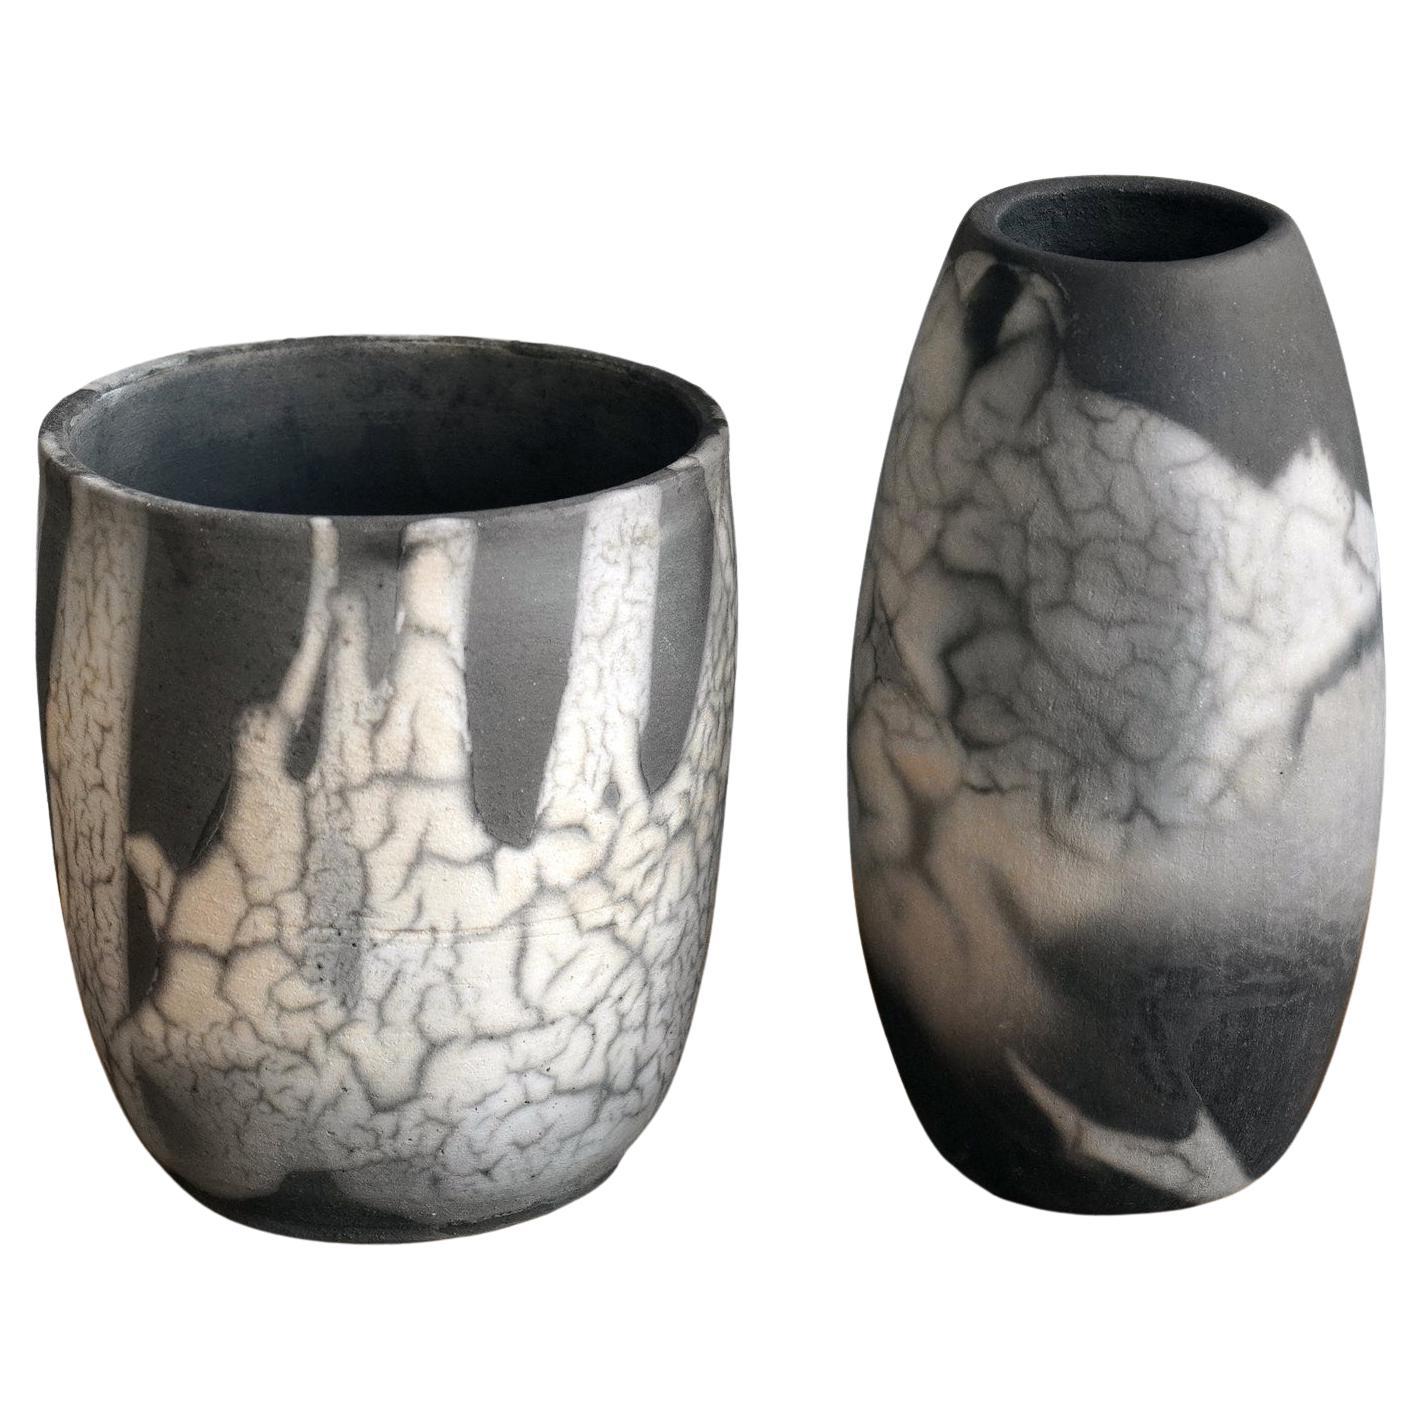 Shinsen & Tsuri Raku Pottery Vase - Smoked Raku - Handmade Ceramic Home Decor For Sale